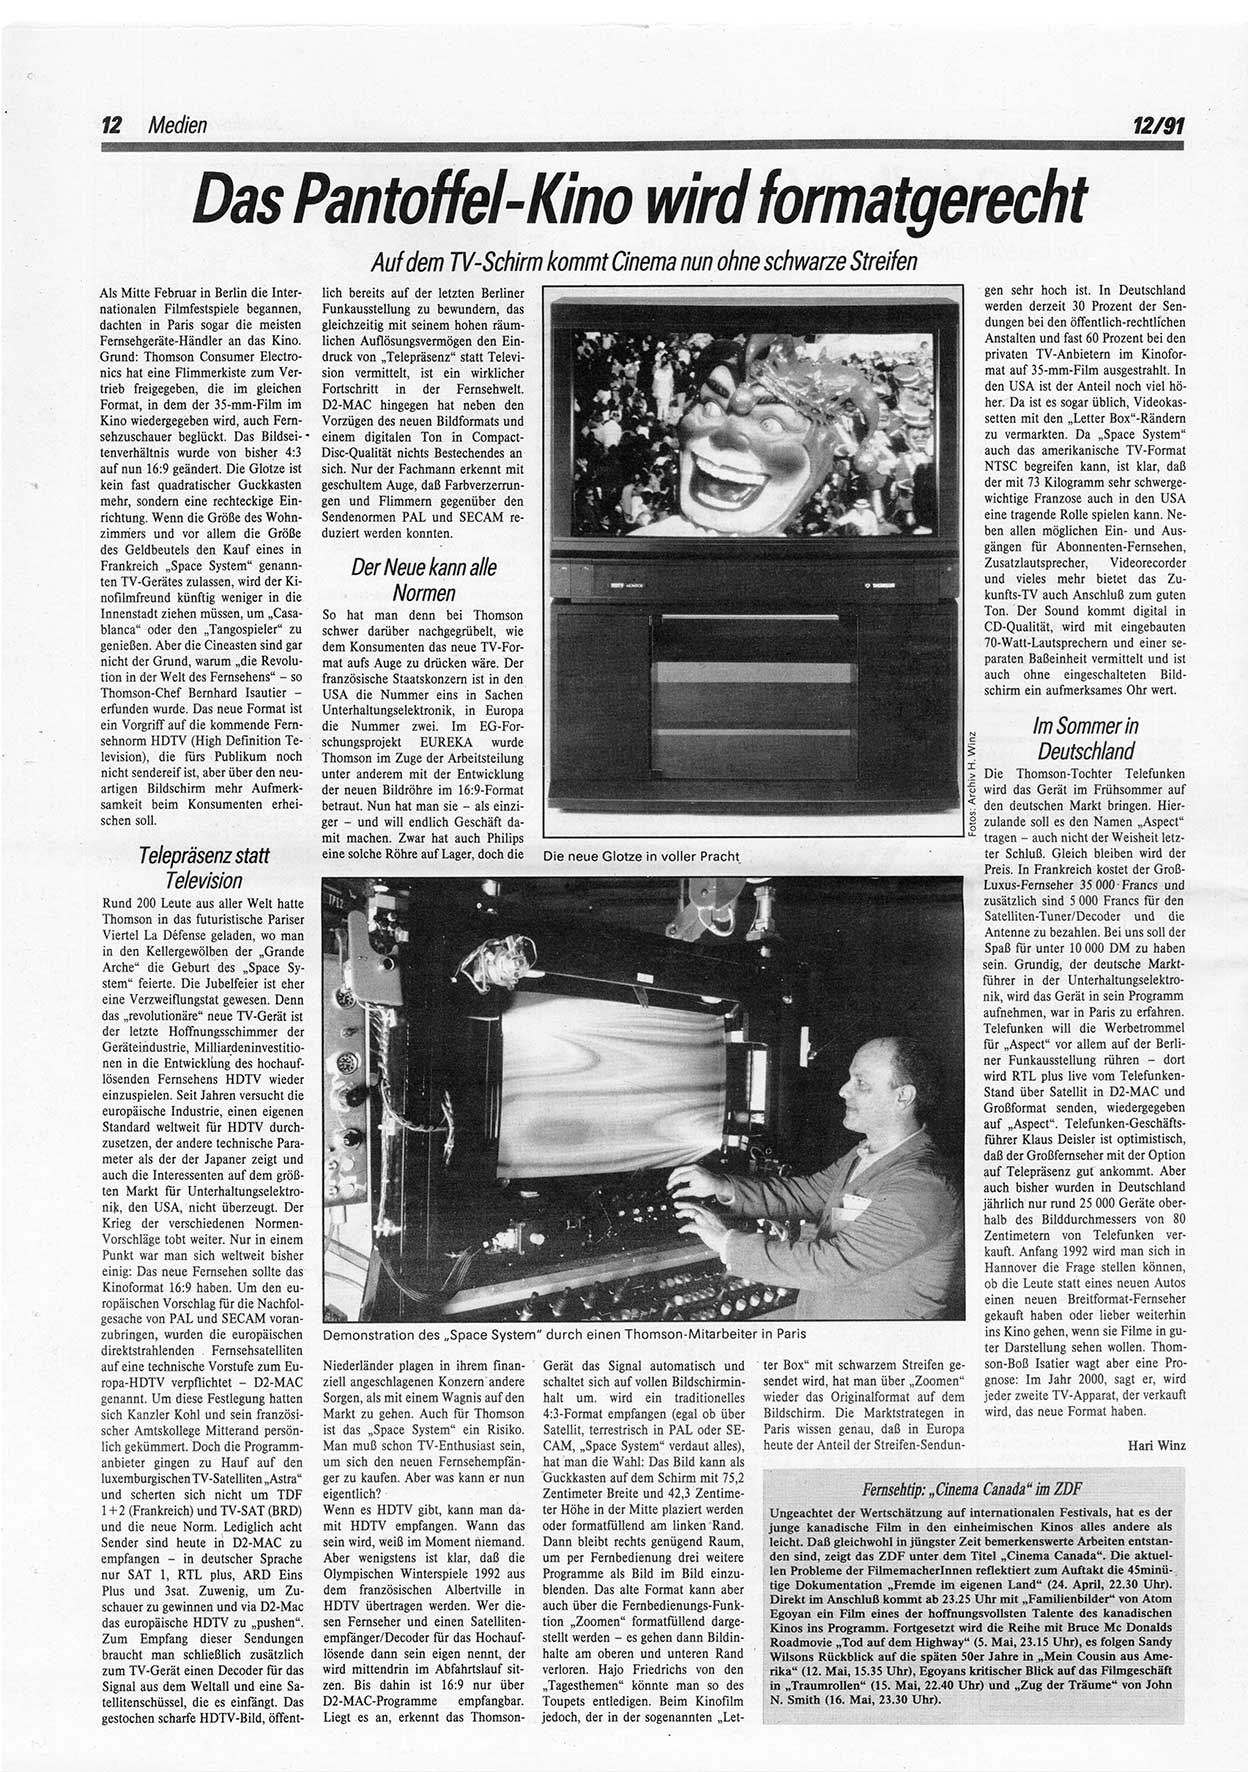 Die Andere, Unabhängige Wochenzeitung für Politik, Kultur und Kunst, Ausgabe 12 vom 20.3.1991, Seite 12 (And. W.-Zg. Ausg. 12 1991, S. 12)